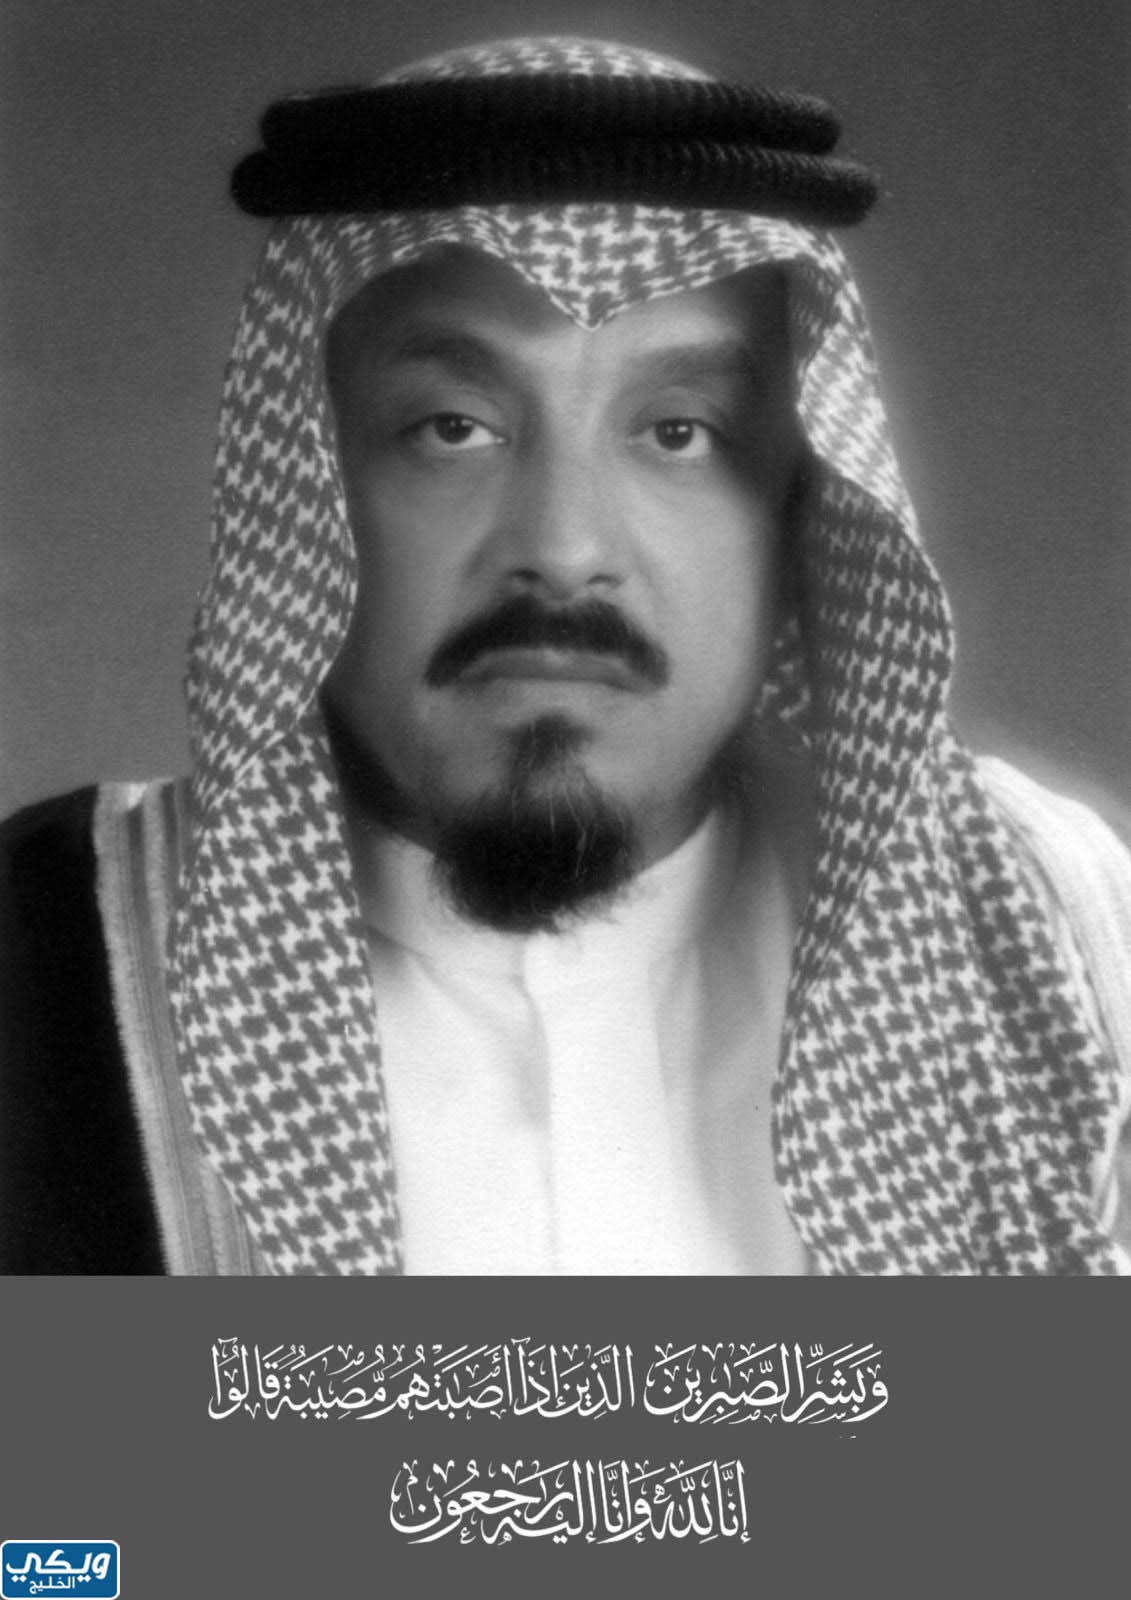 كم عمر الامير محمد بن سعد ال سعود عند الوفاة